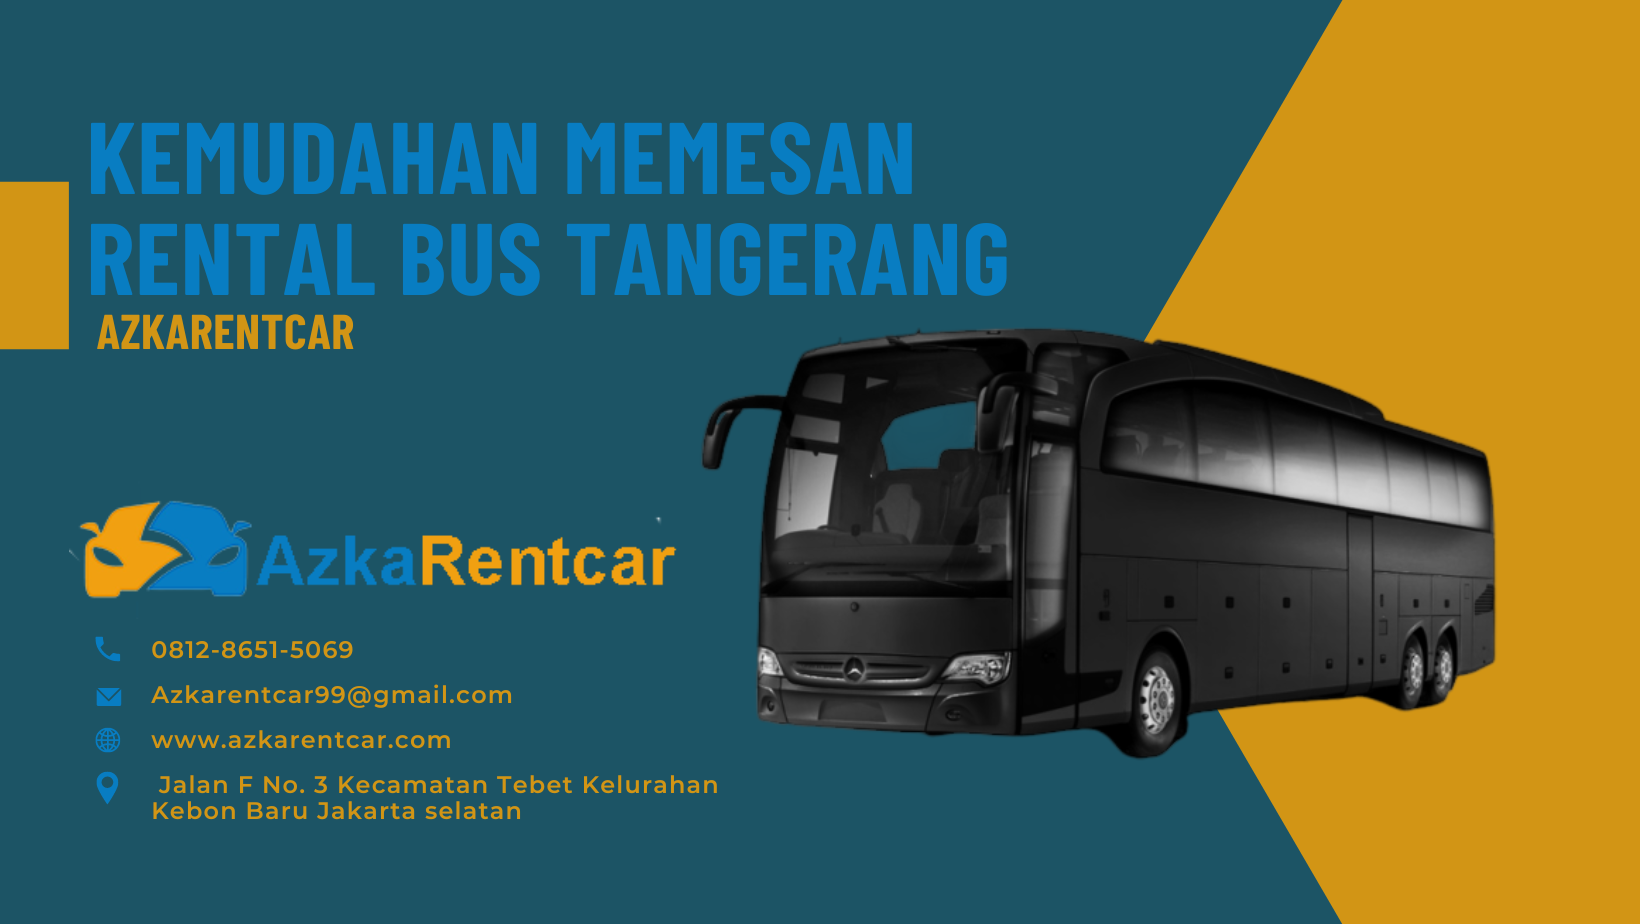 Kemudahan Memesan Rental Bus Tangerang di AzkaRentcar